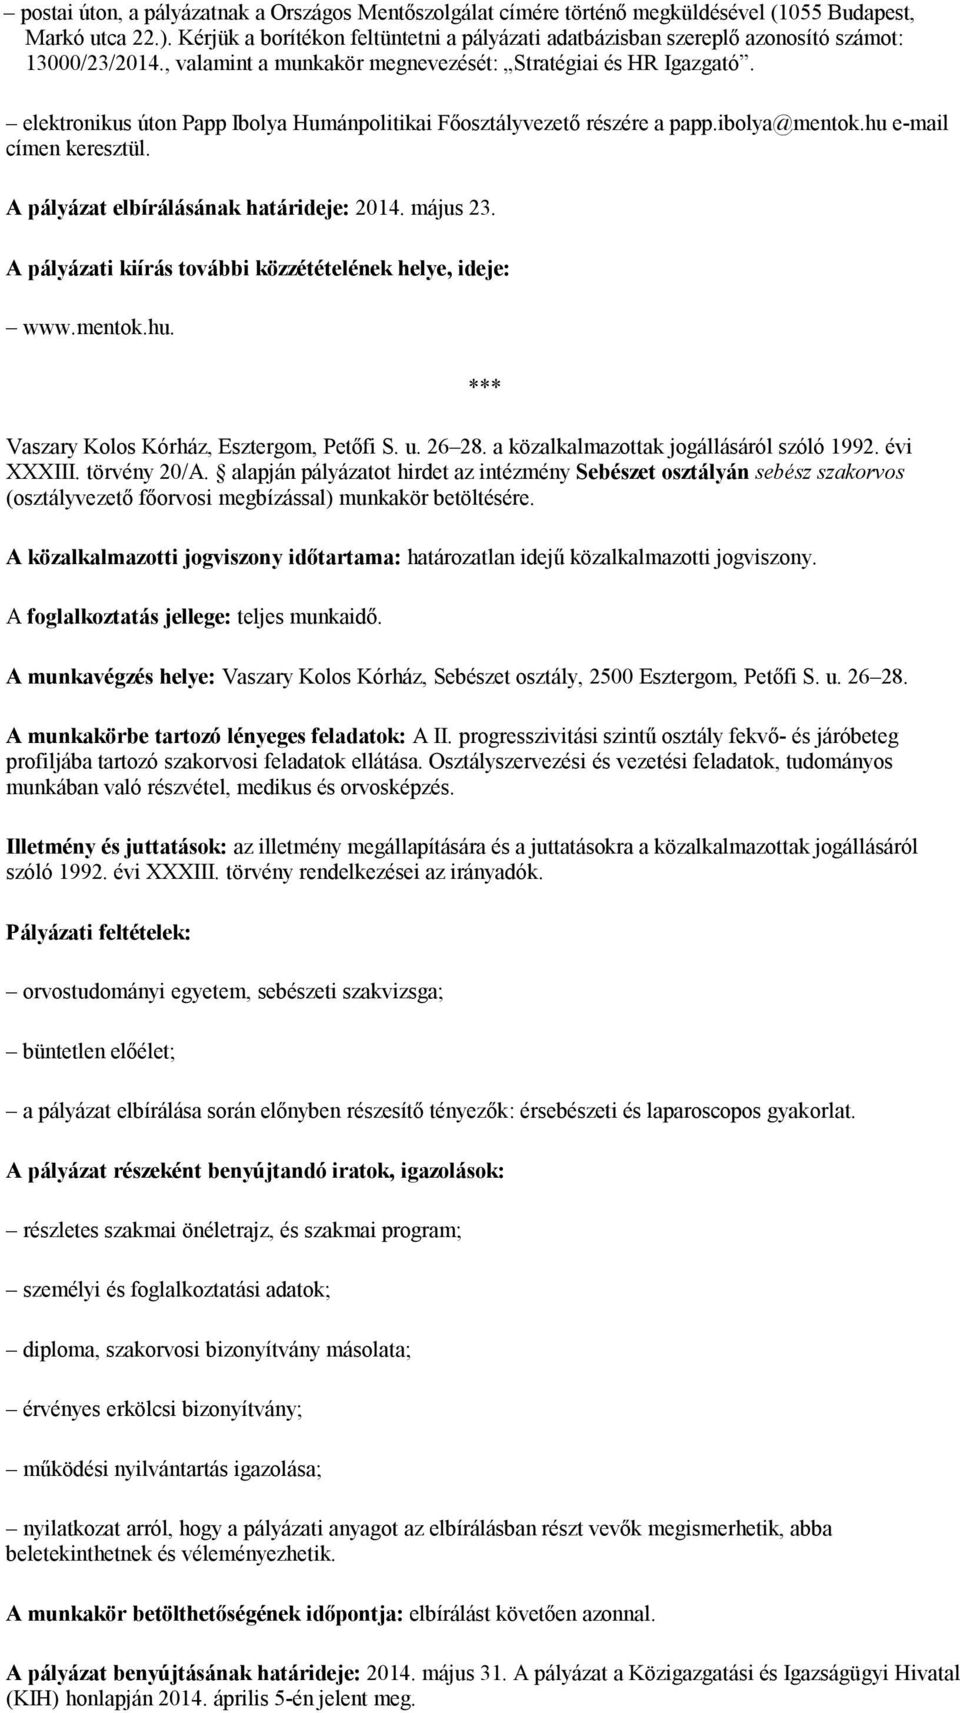 elektronikus úton Papp Ibolya Humánpolitikai Főosztályvezető részére a papp.ibolya@mentok.hu e-mail címen keresztül. A pályázat elbírálásának határideje: 2014. május 23.